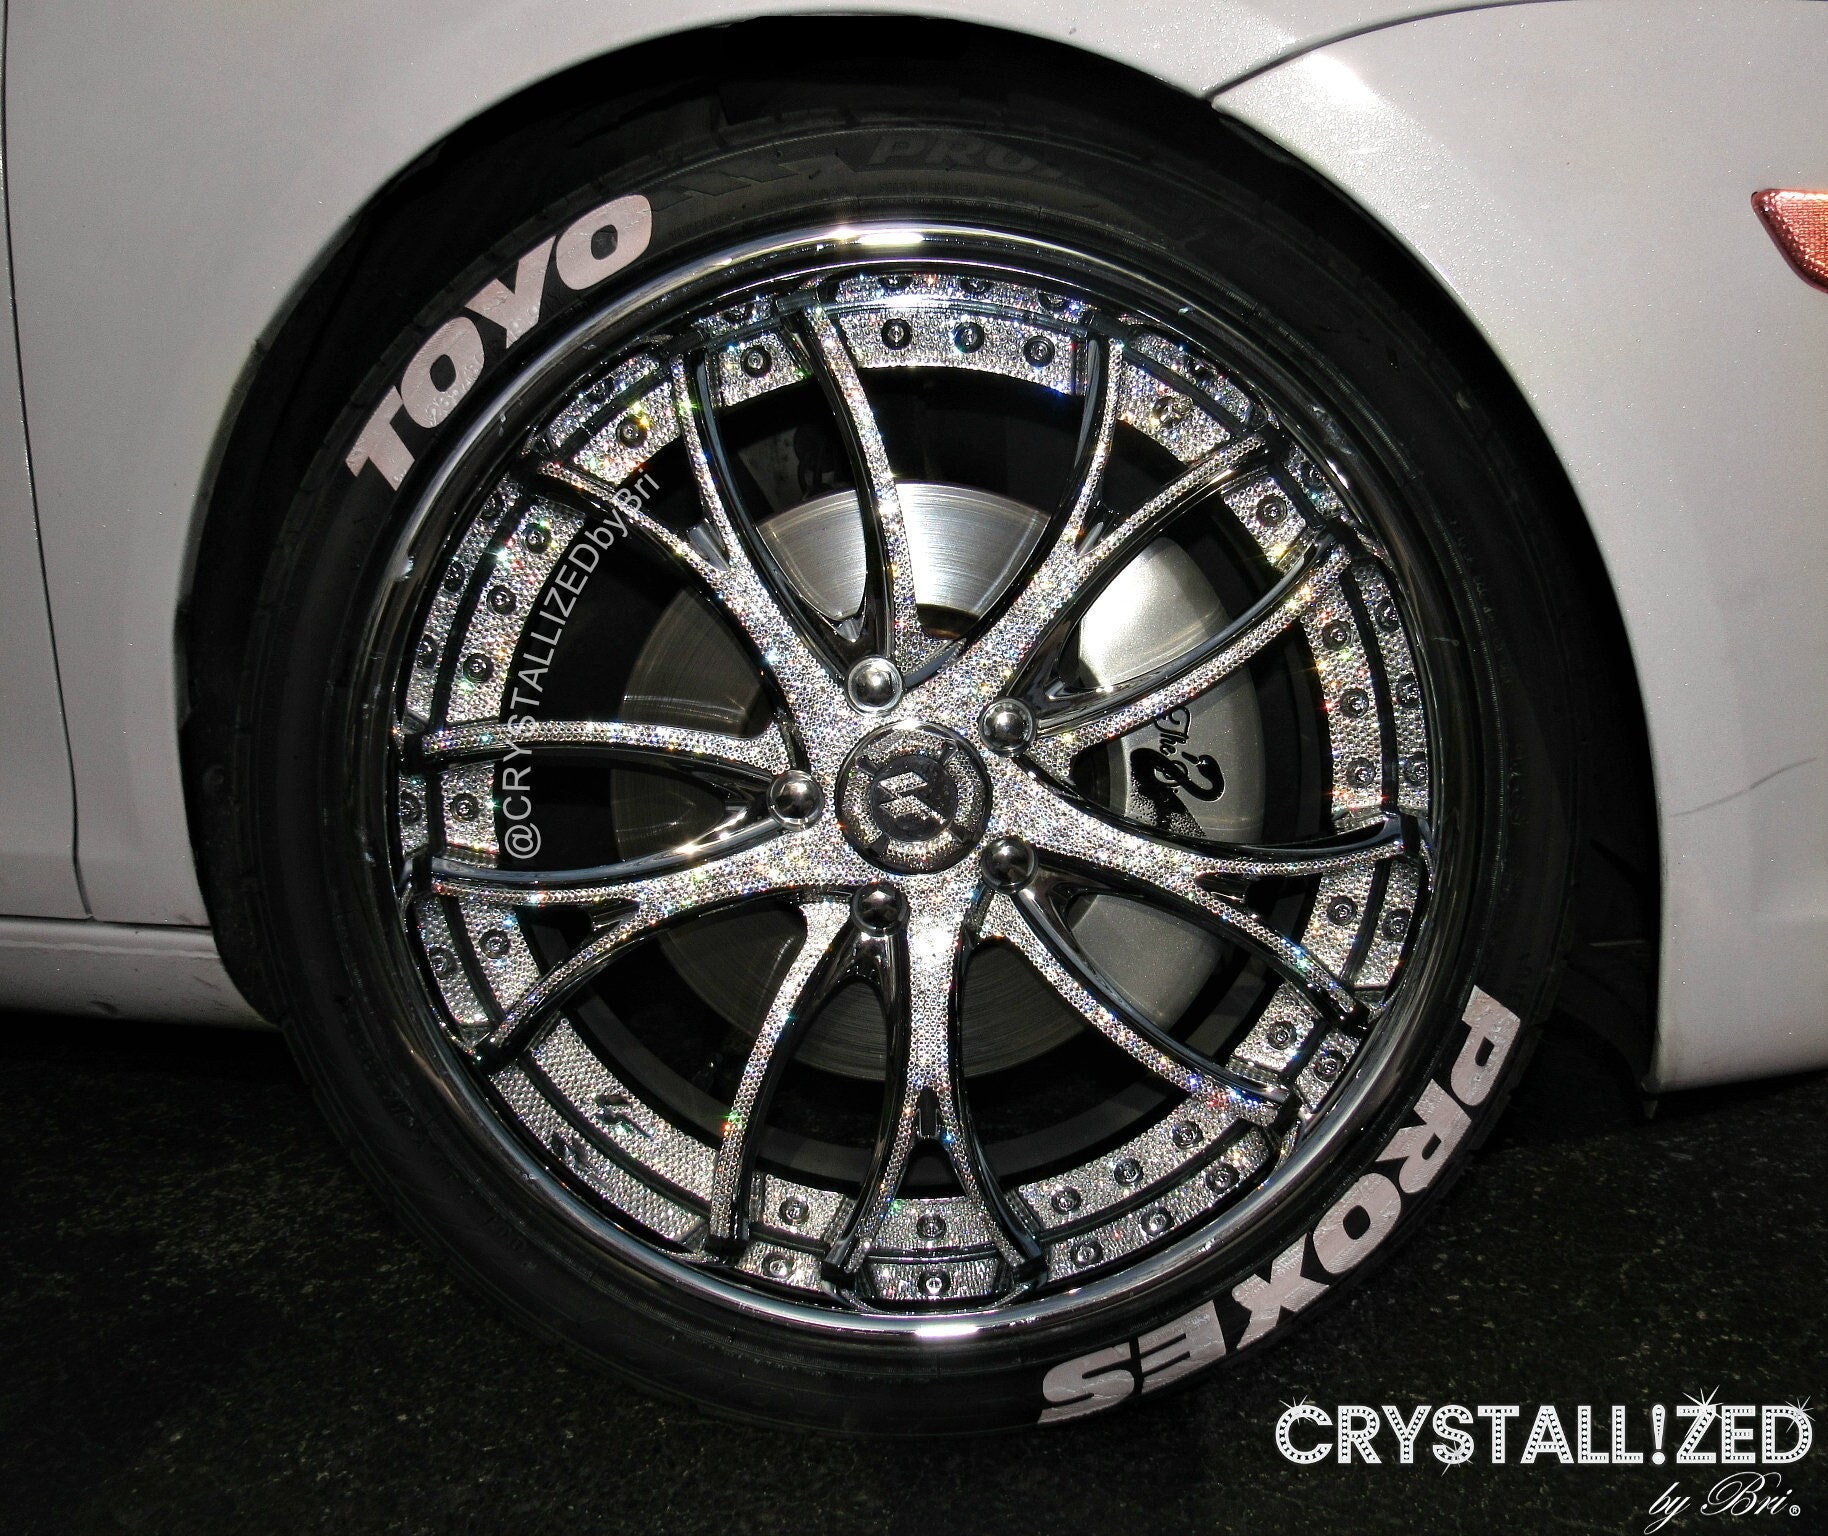 Politibetjent Descent Ombord Austrian Crystal Custom Wheels Bling Crystallized Car Bling - Etsy